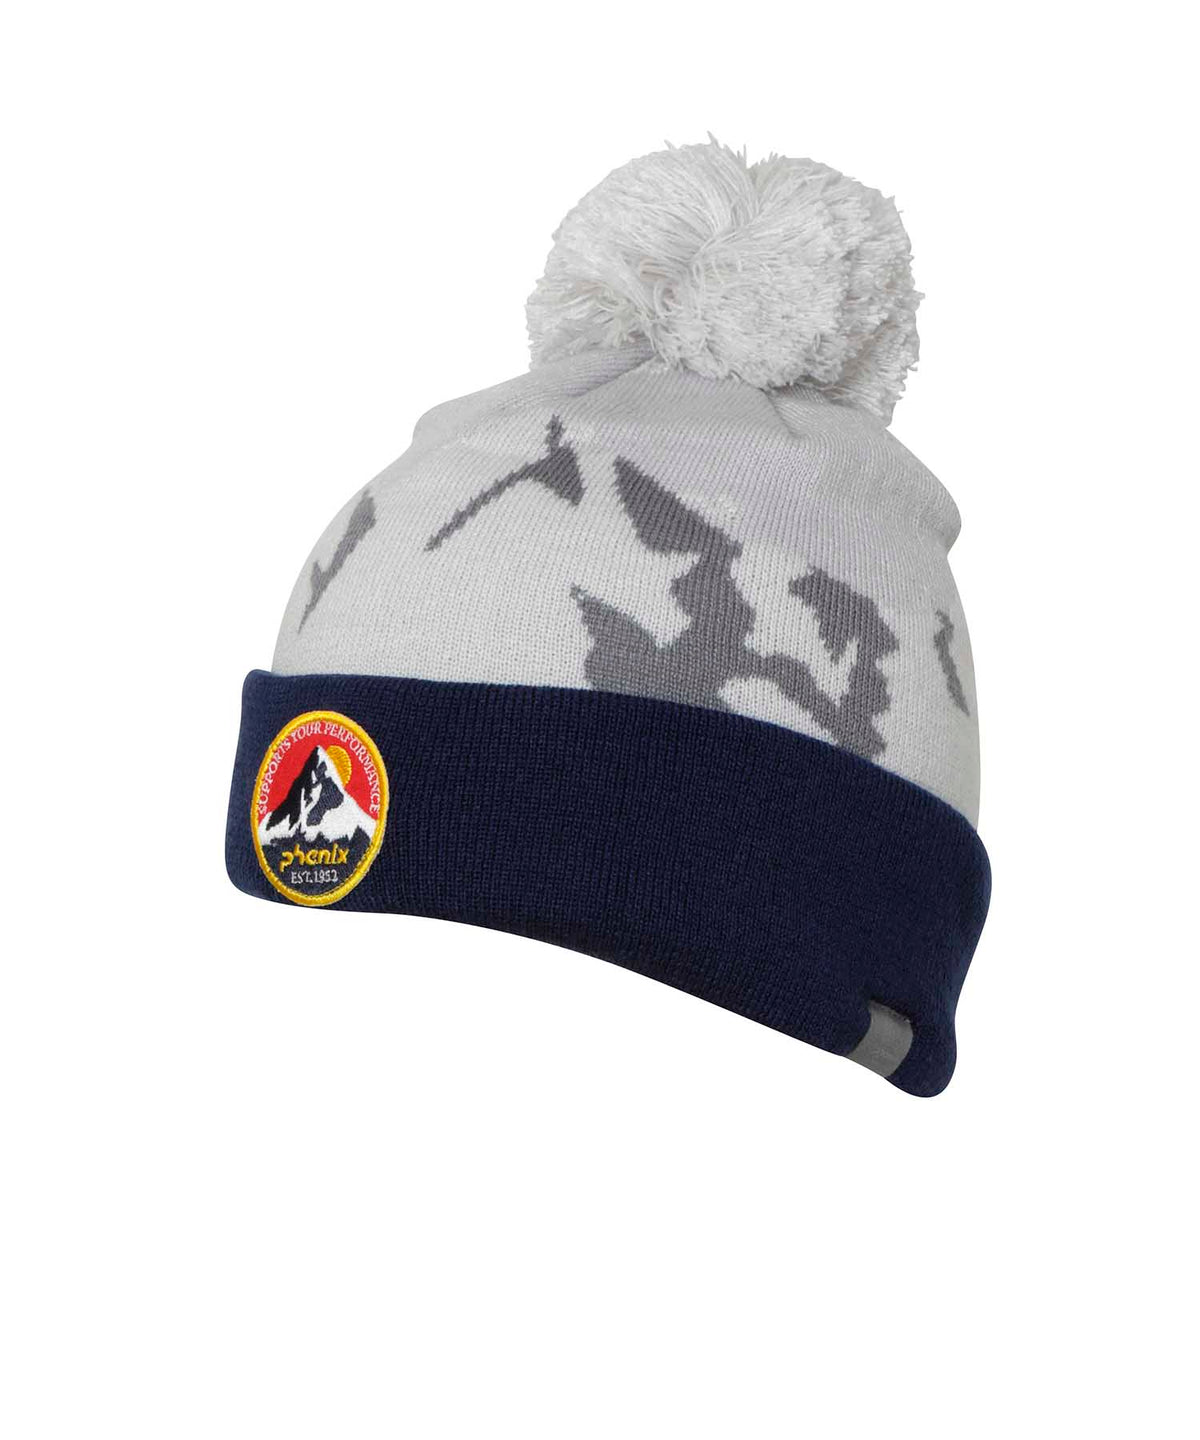 【KIDS/JUNIOR】Snow Mountain Junior Knit Hat 2023年10月中旬お届け